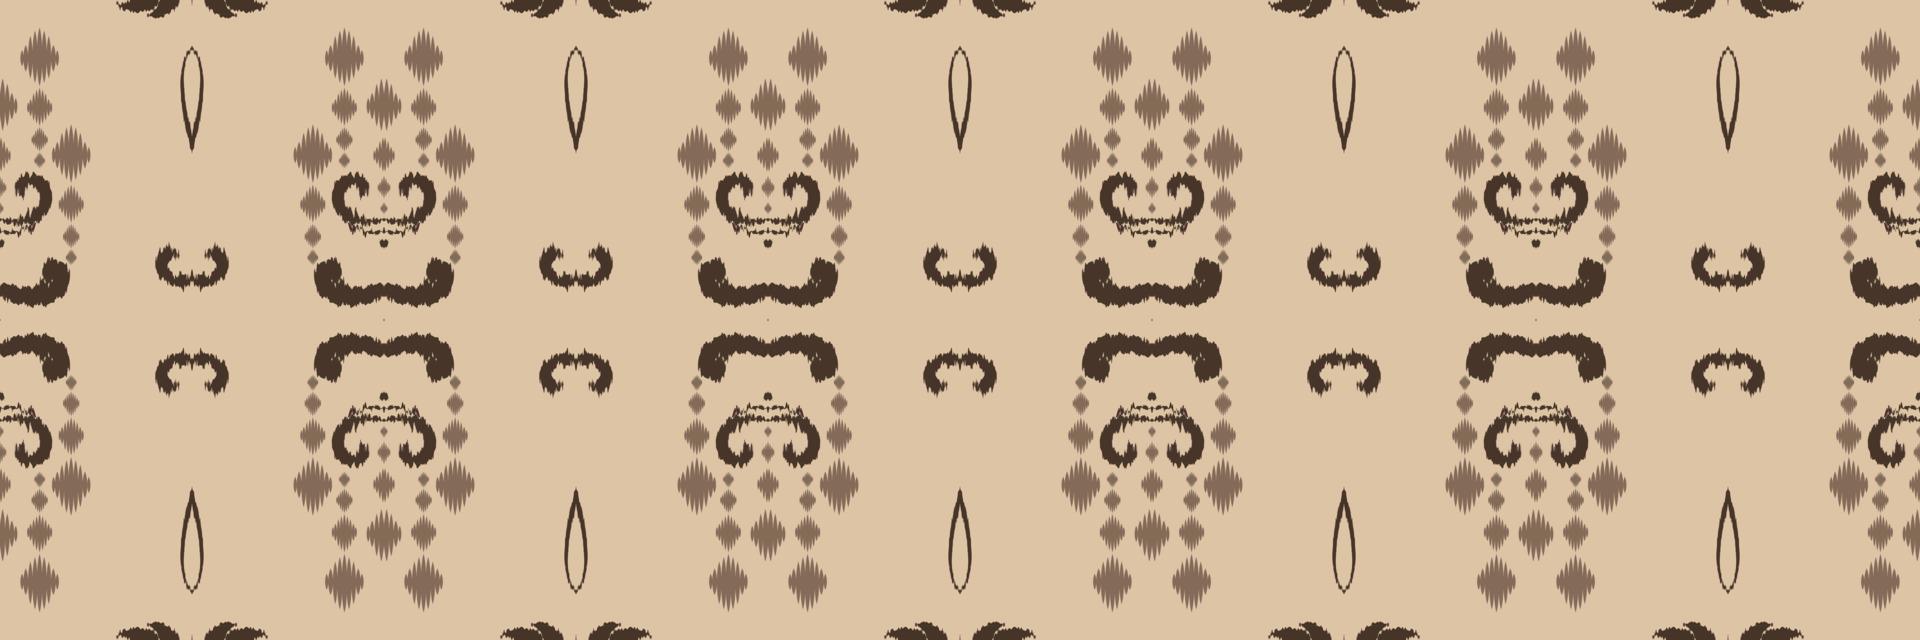 Motiv philippinisches Ikat-Batik-Textil nahtloses Muster digitales Vektordesign für den Druck Saree Kurti Borneo Stoffrand Pinselsymbole Muster Partykleidung vektor